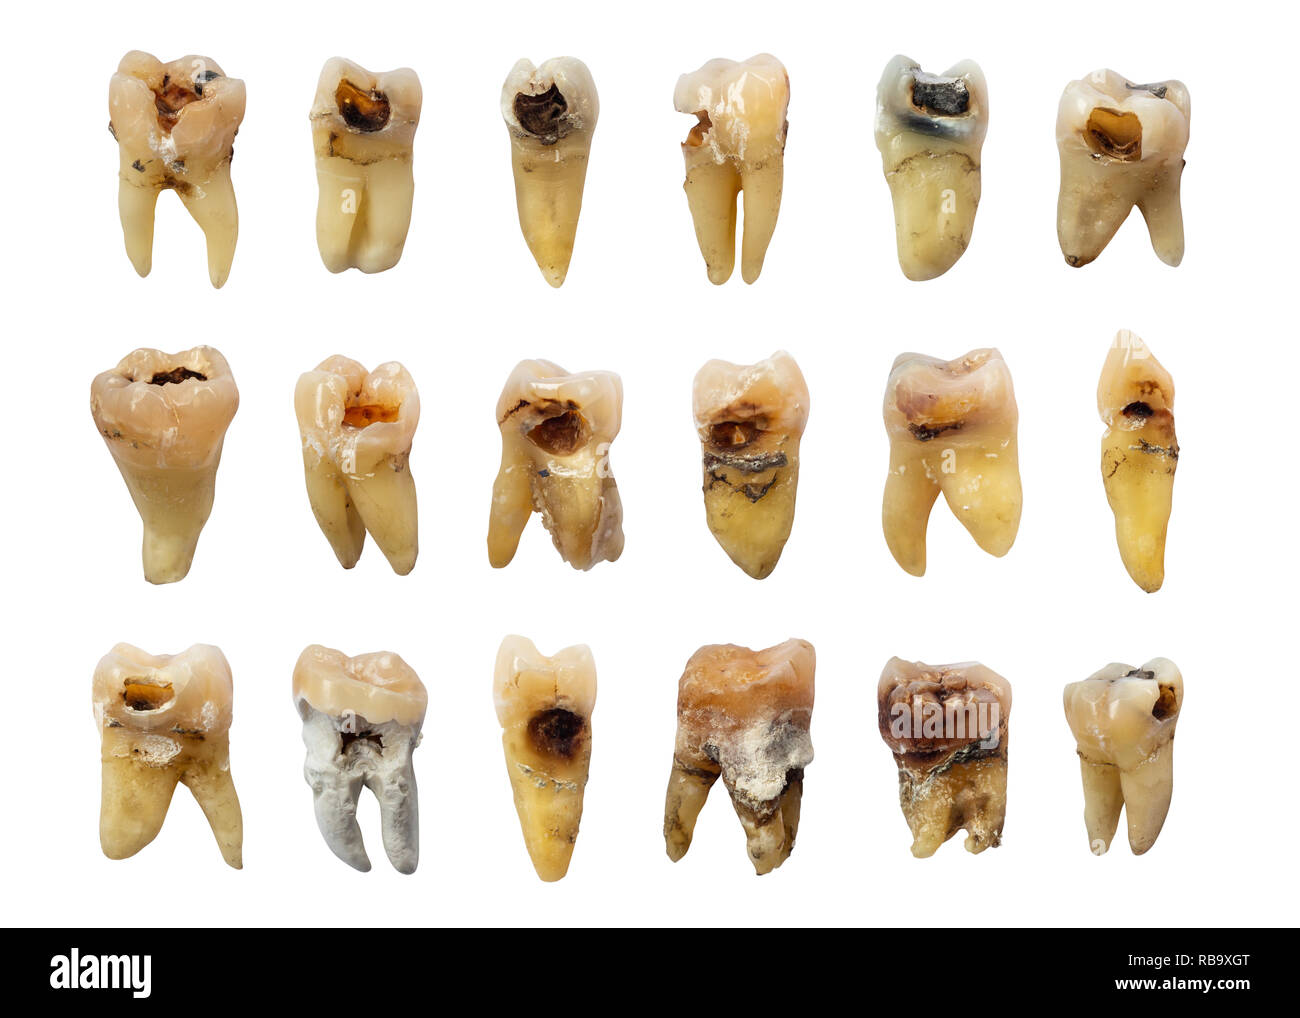 Zähne mit Karies (Zahnfäule), Fluorvergiftung und Infinitesimalrechnung. isolierte Hintergrund. Stockfoto